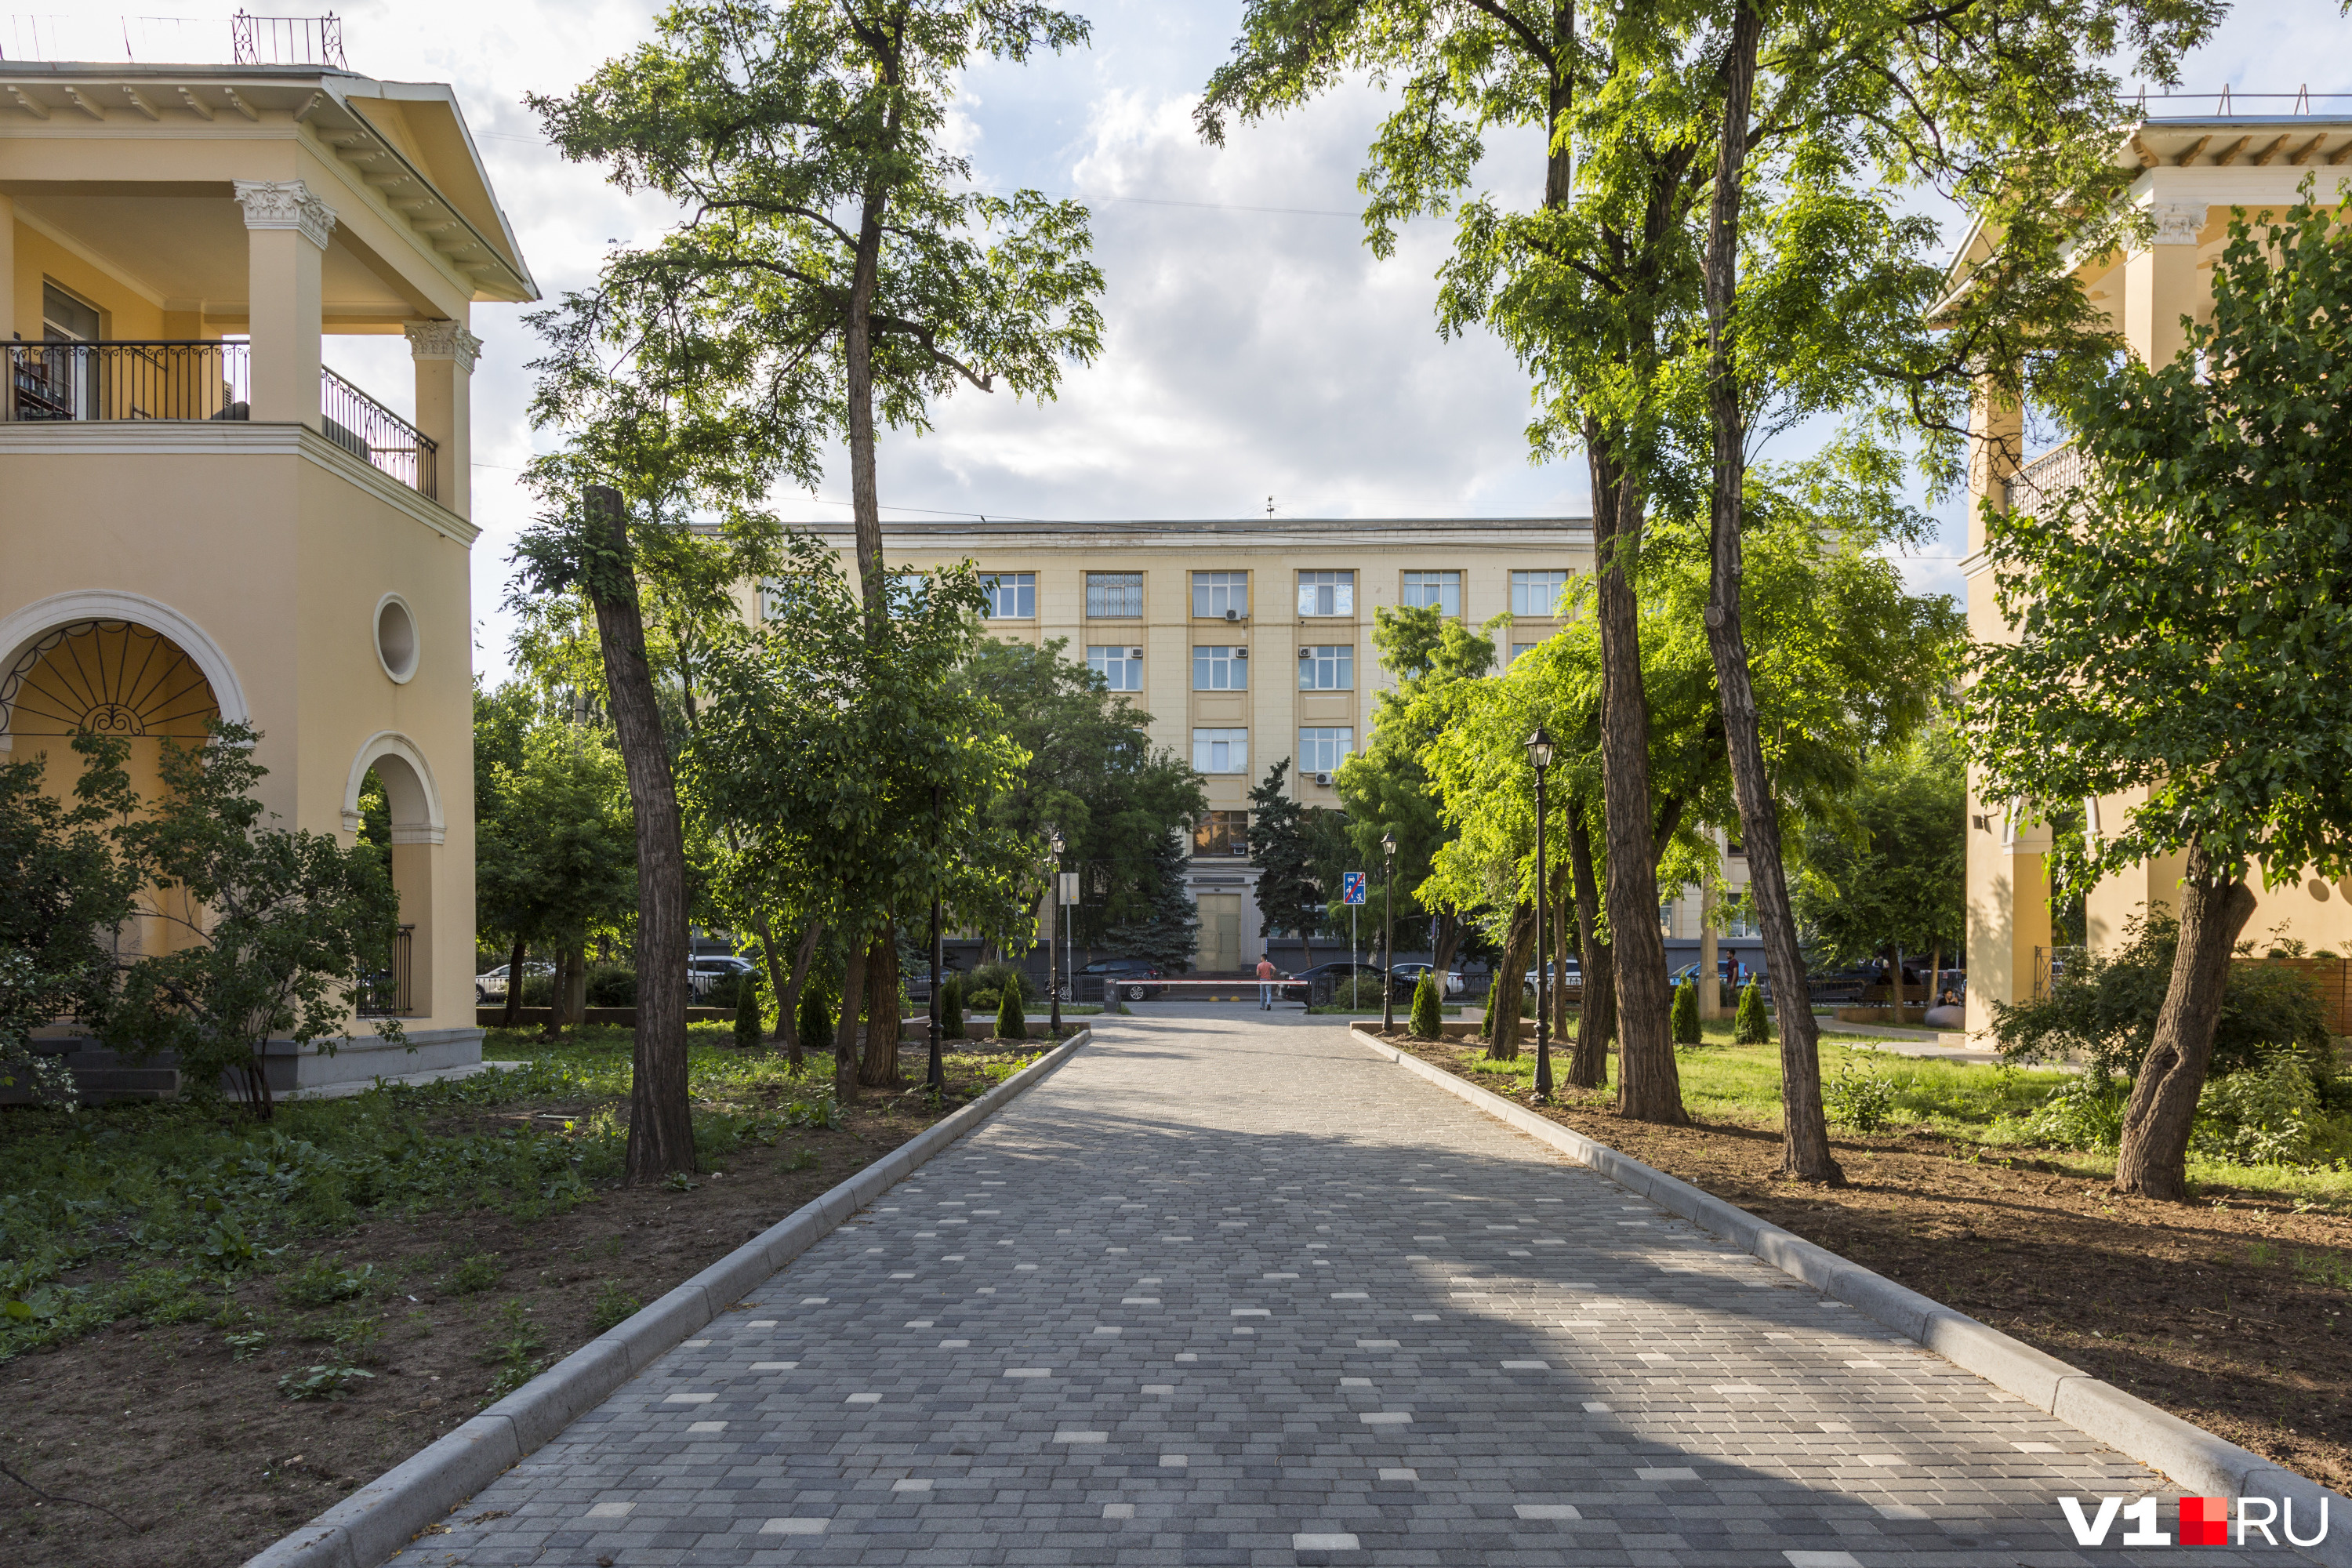 Бетонные бордюры и тротуарная плитка — характерные черты современного благоустройства в Волгограде